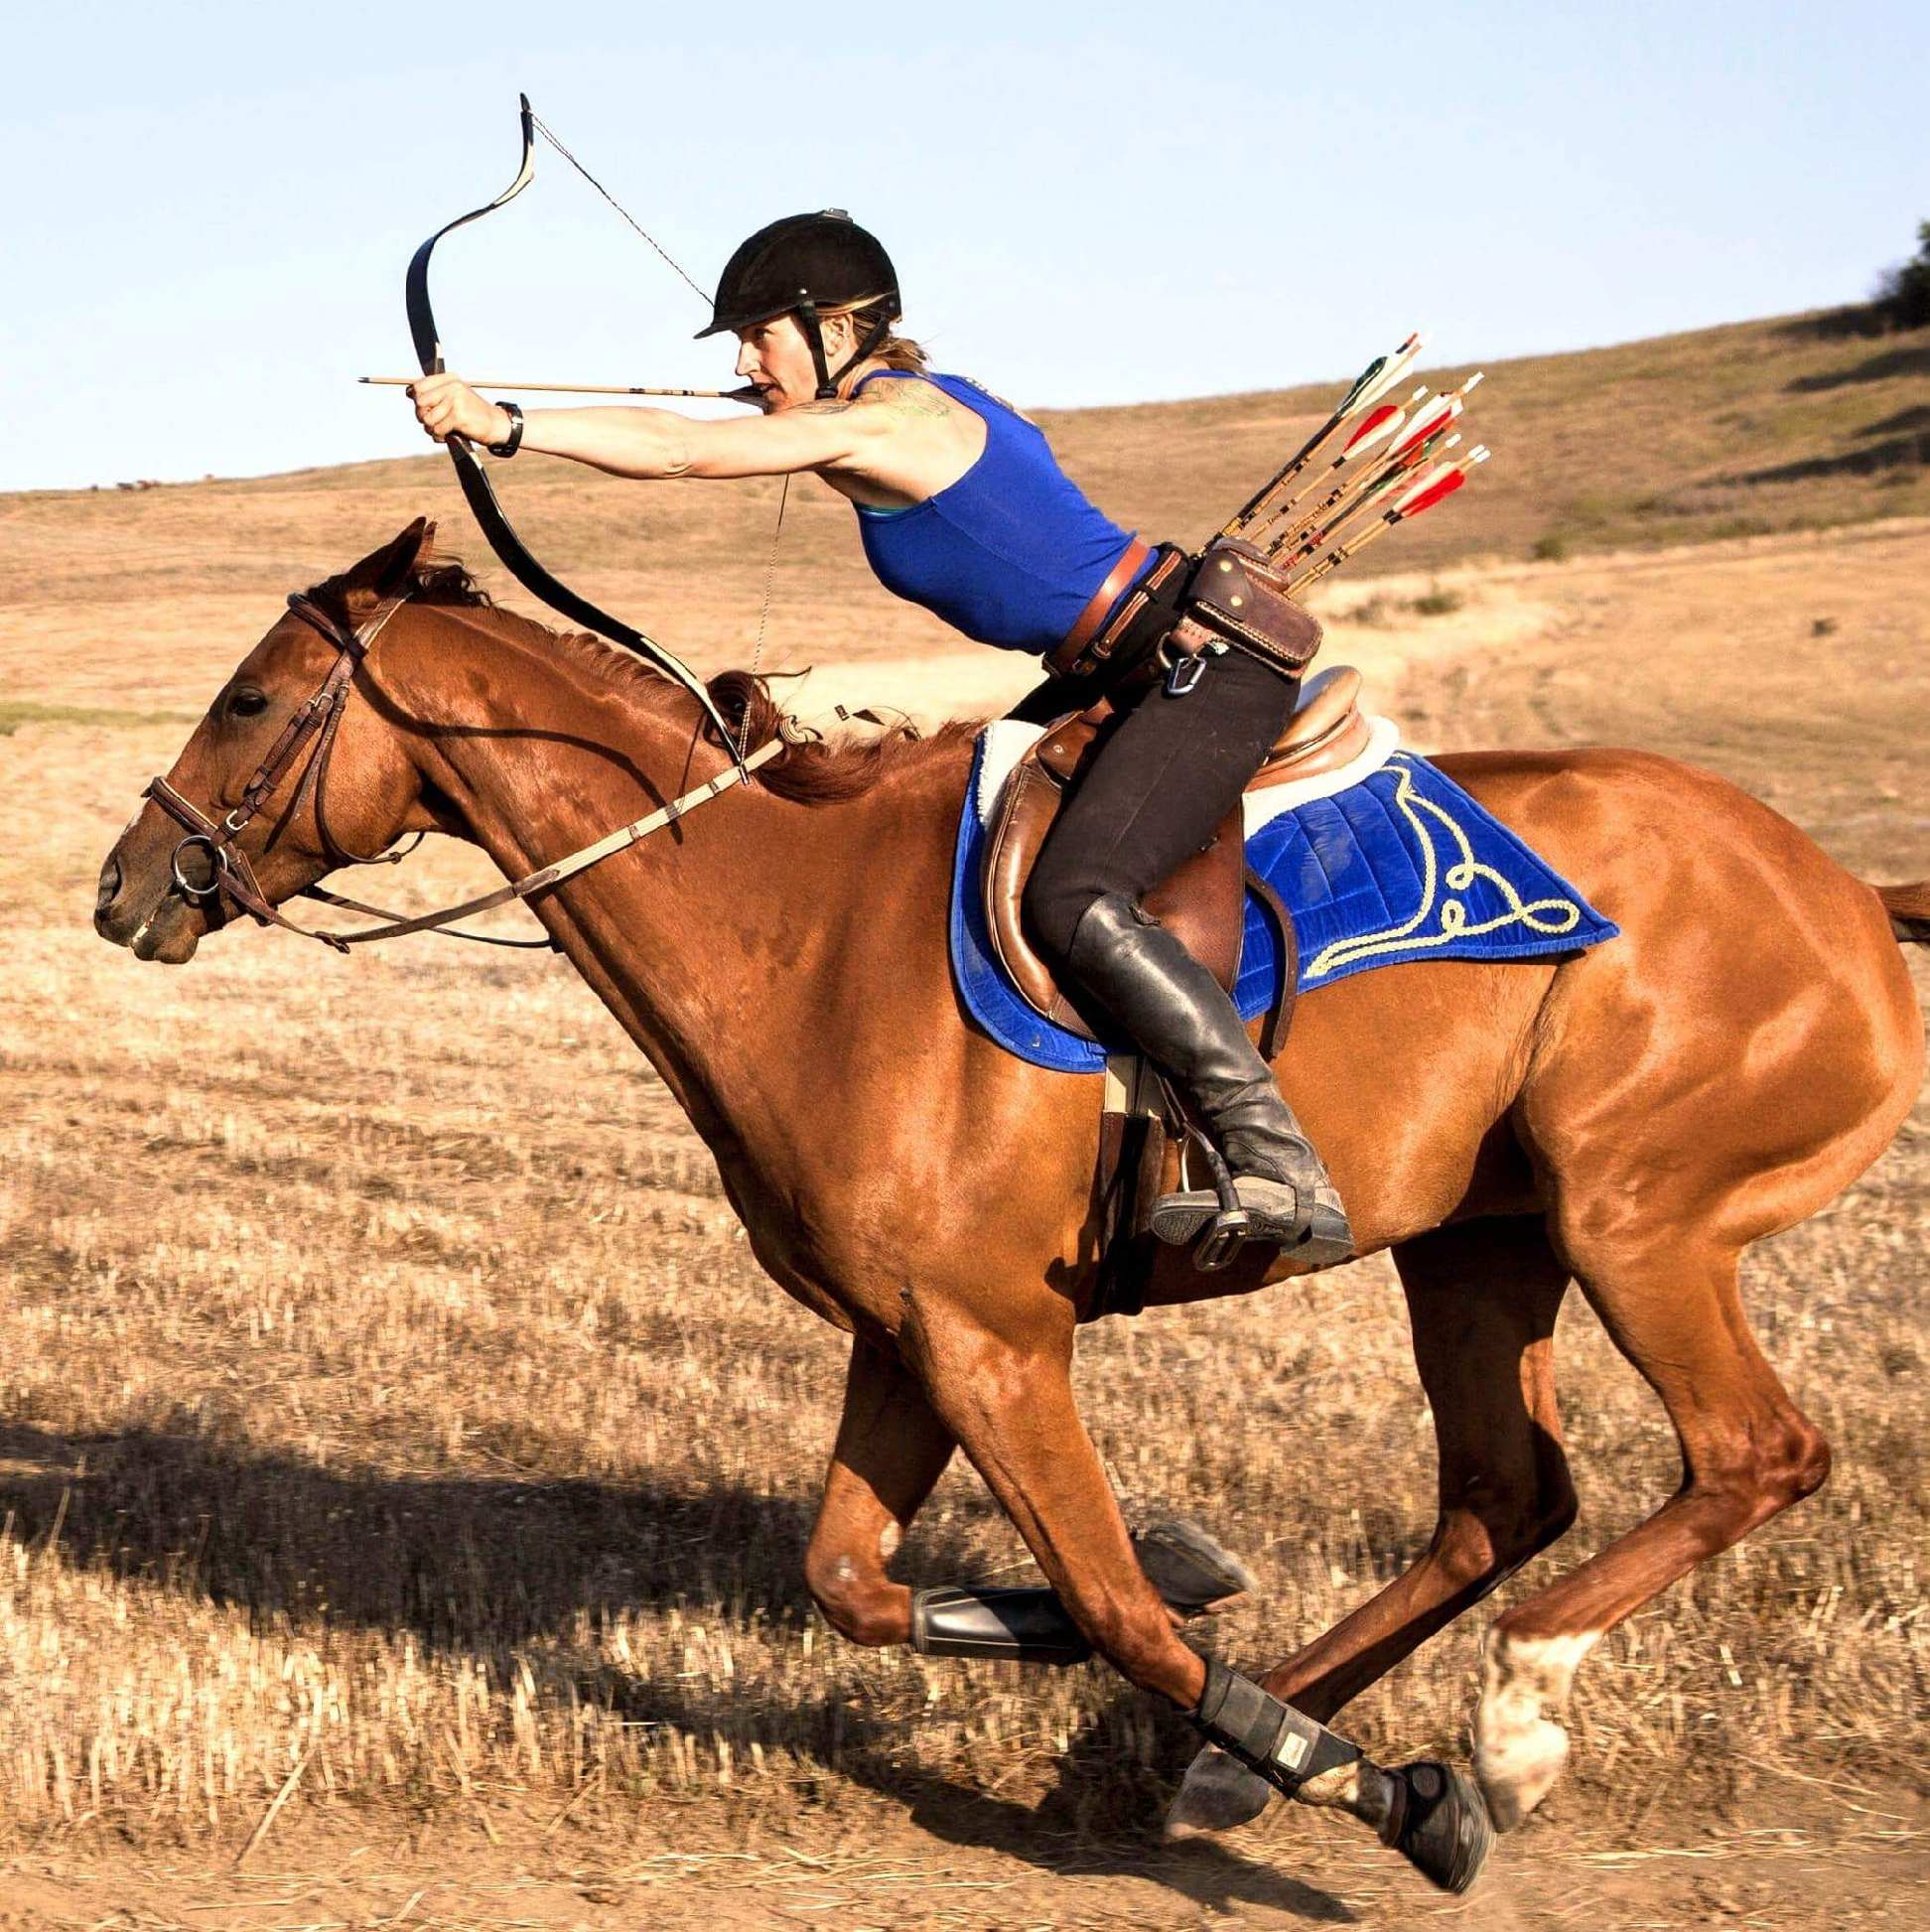 Meet our Ambassador: Hilary Merrill, Pro Horse Archer